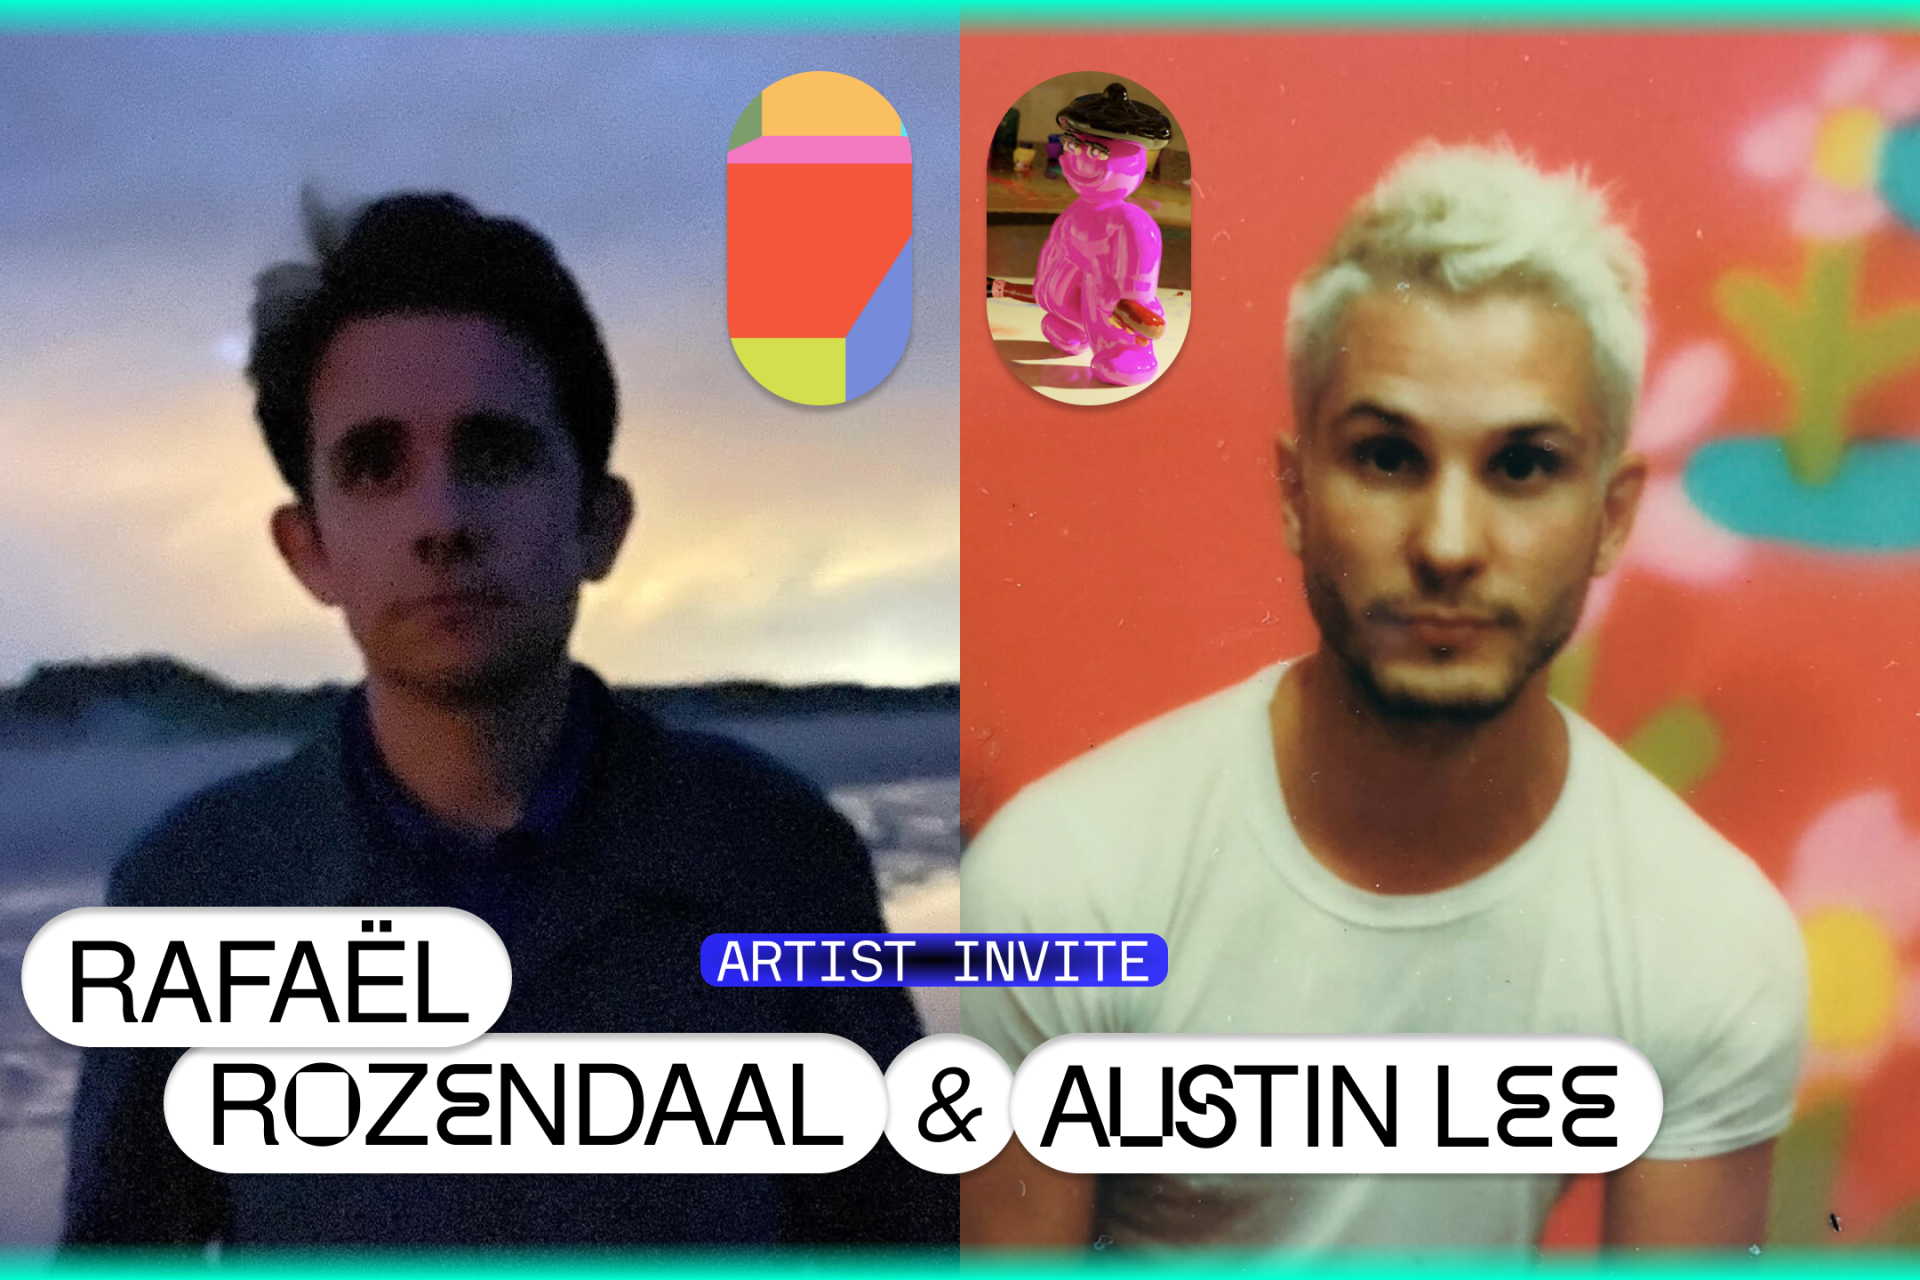 Artist Invite: Rafaël Rozendaal & Austin Lee